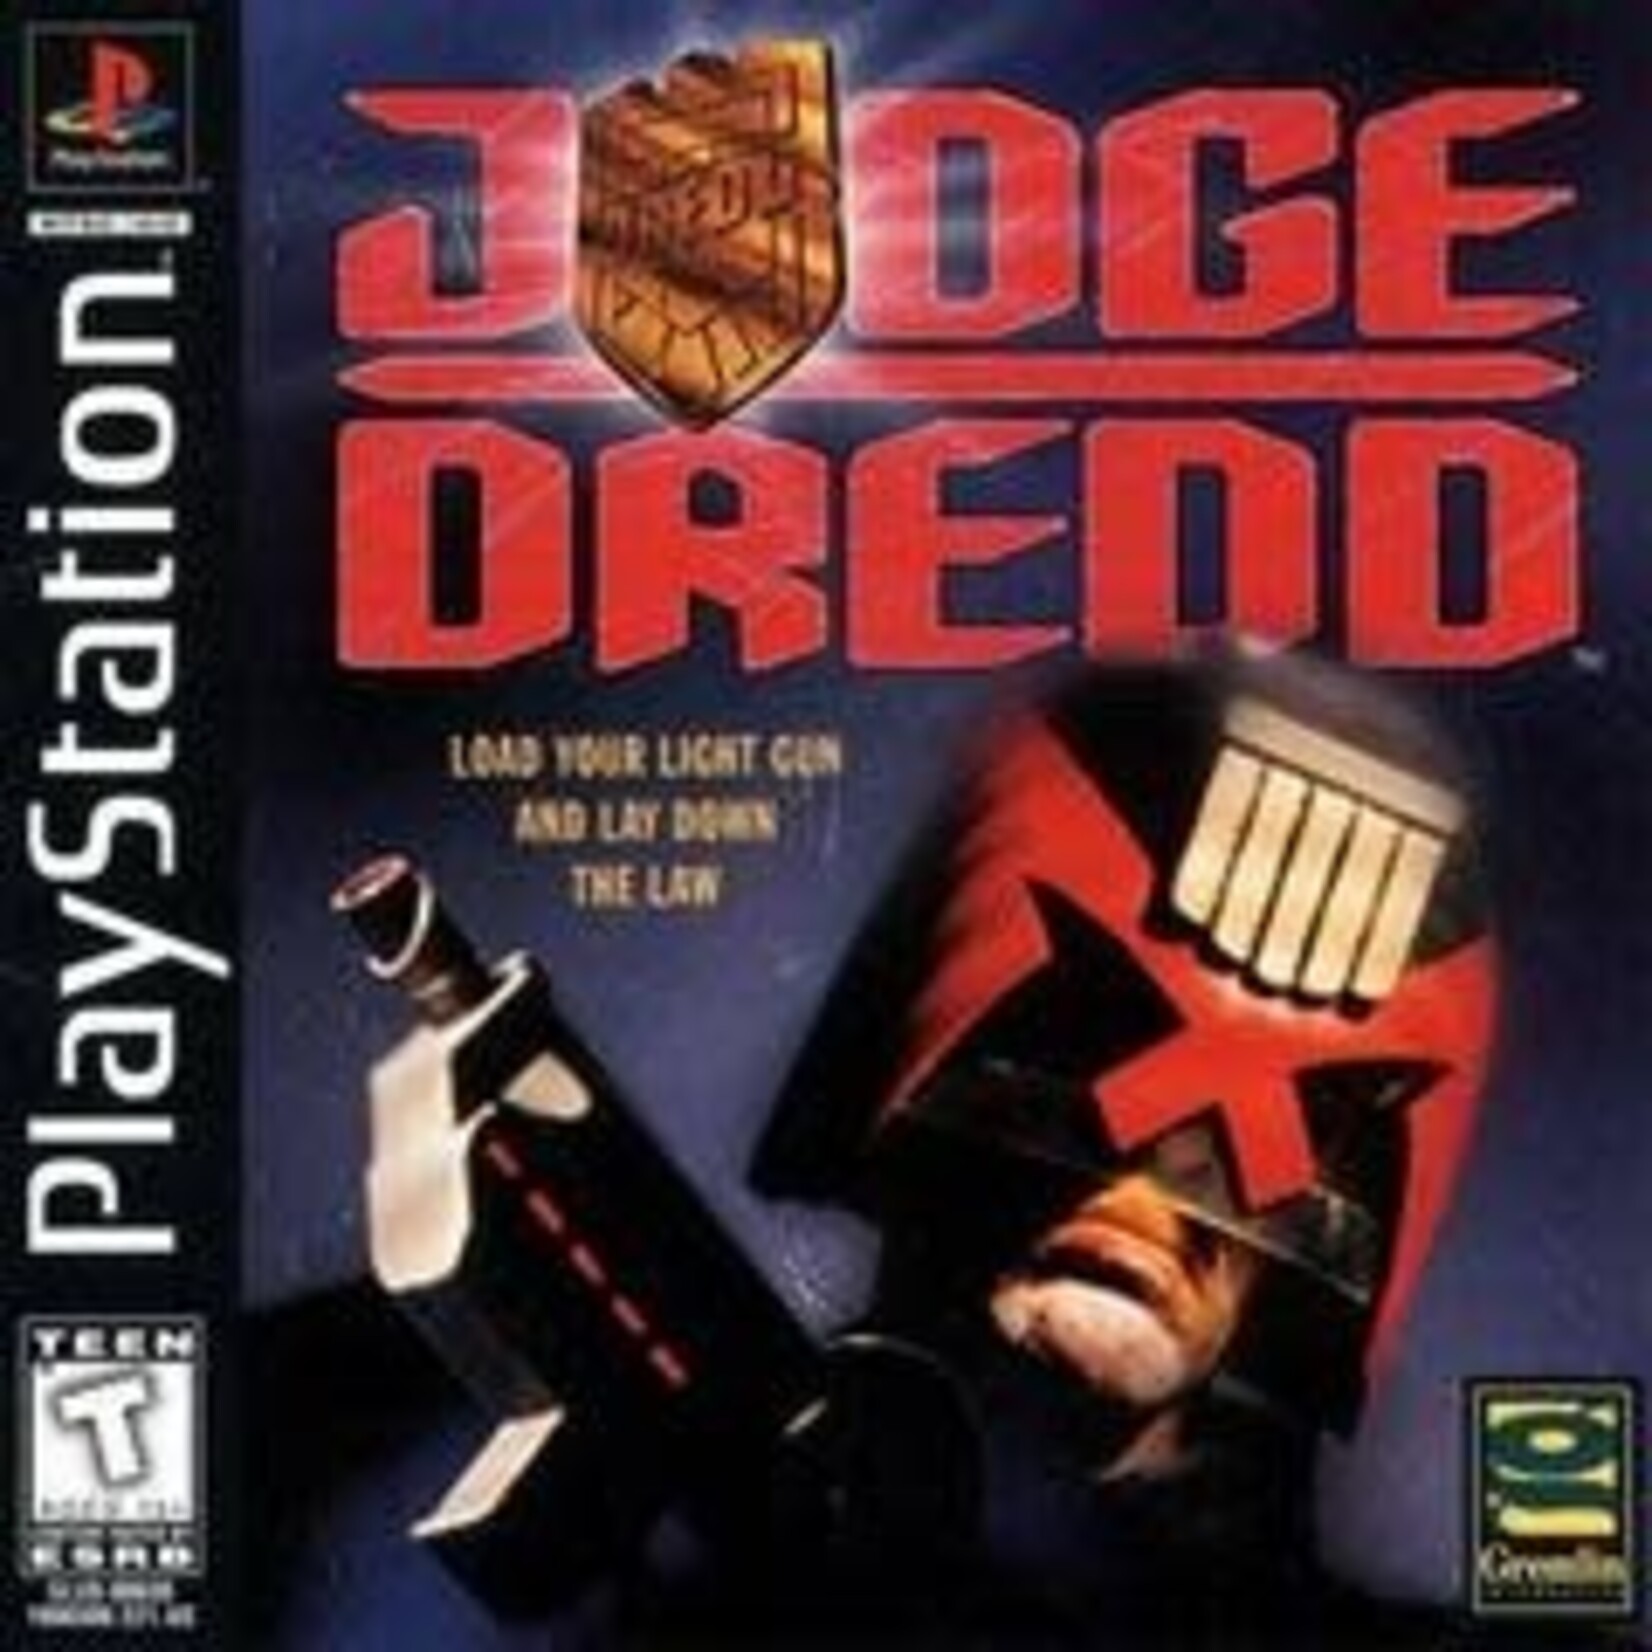 PS1U-Judge Dredd